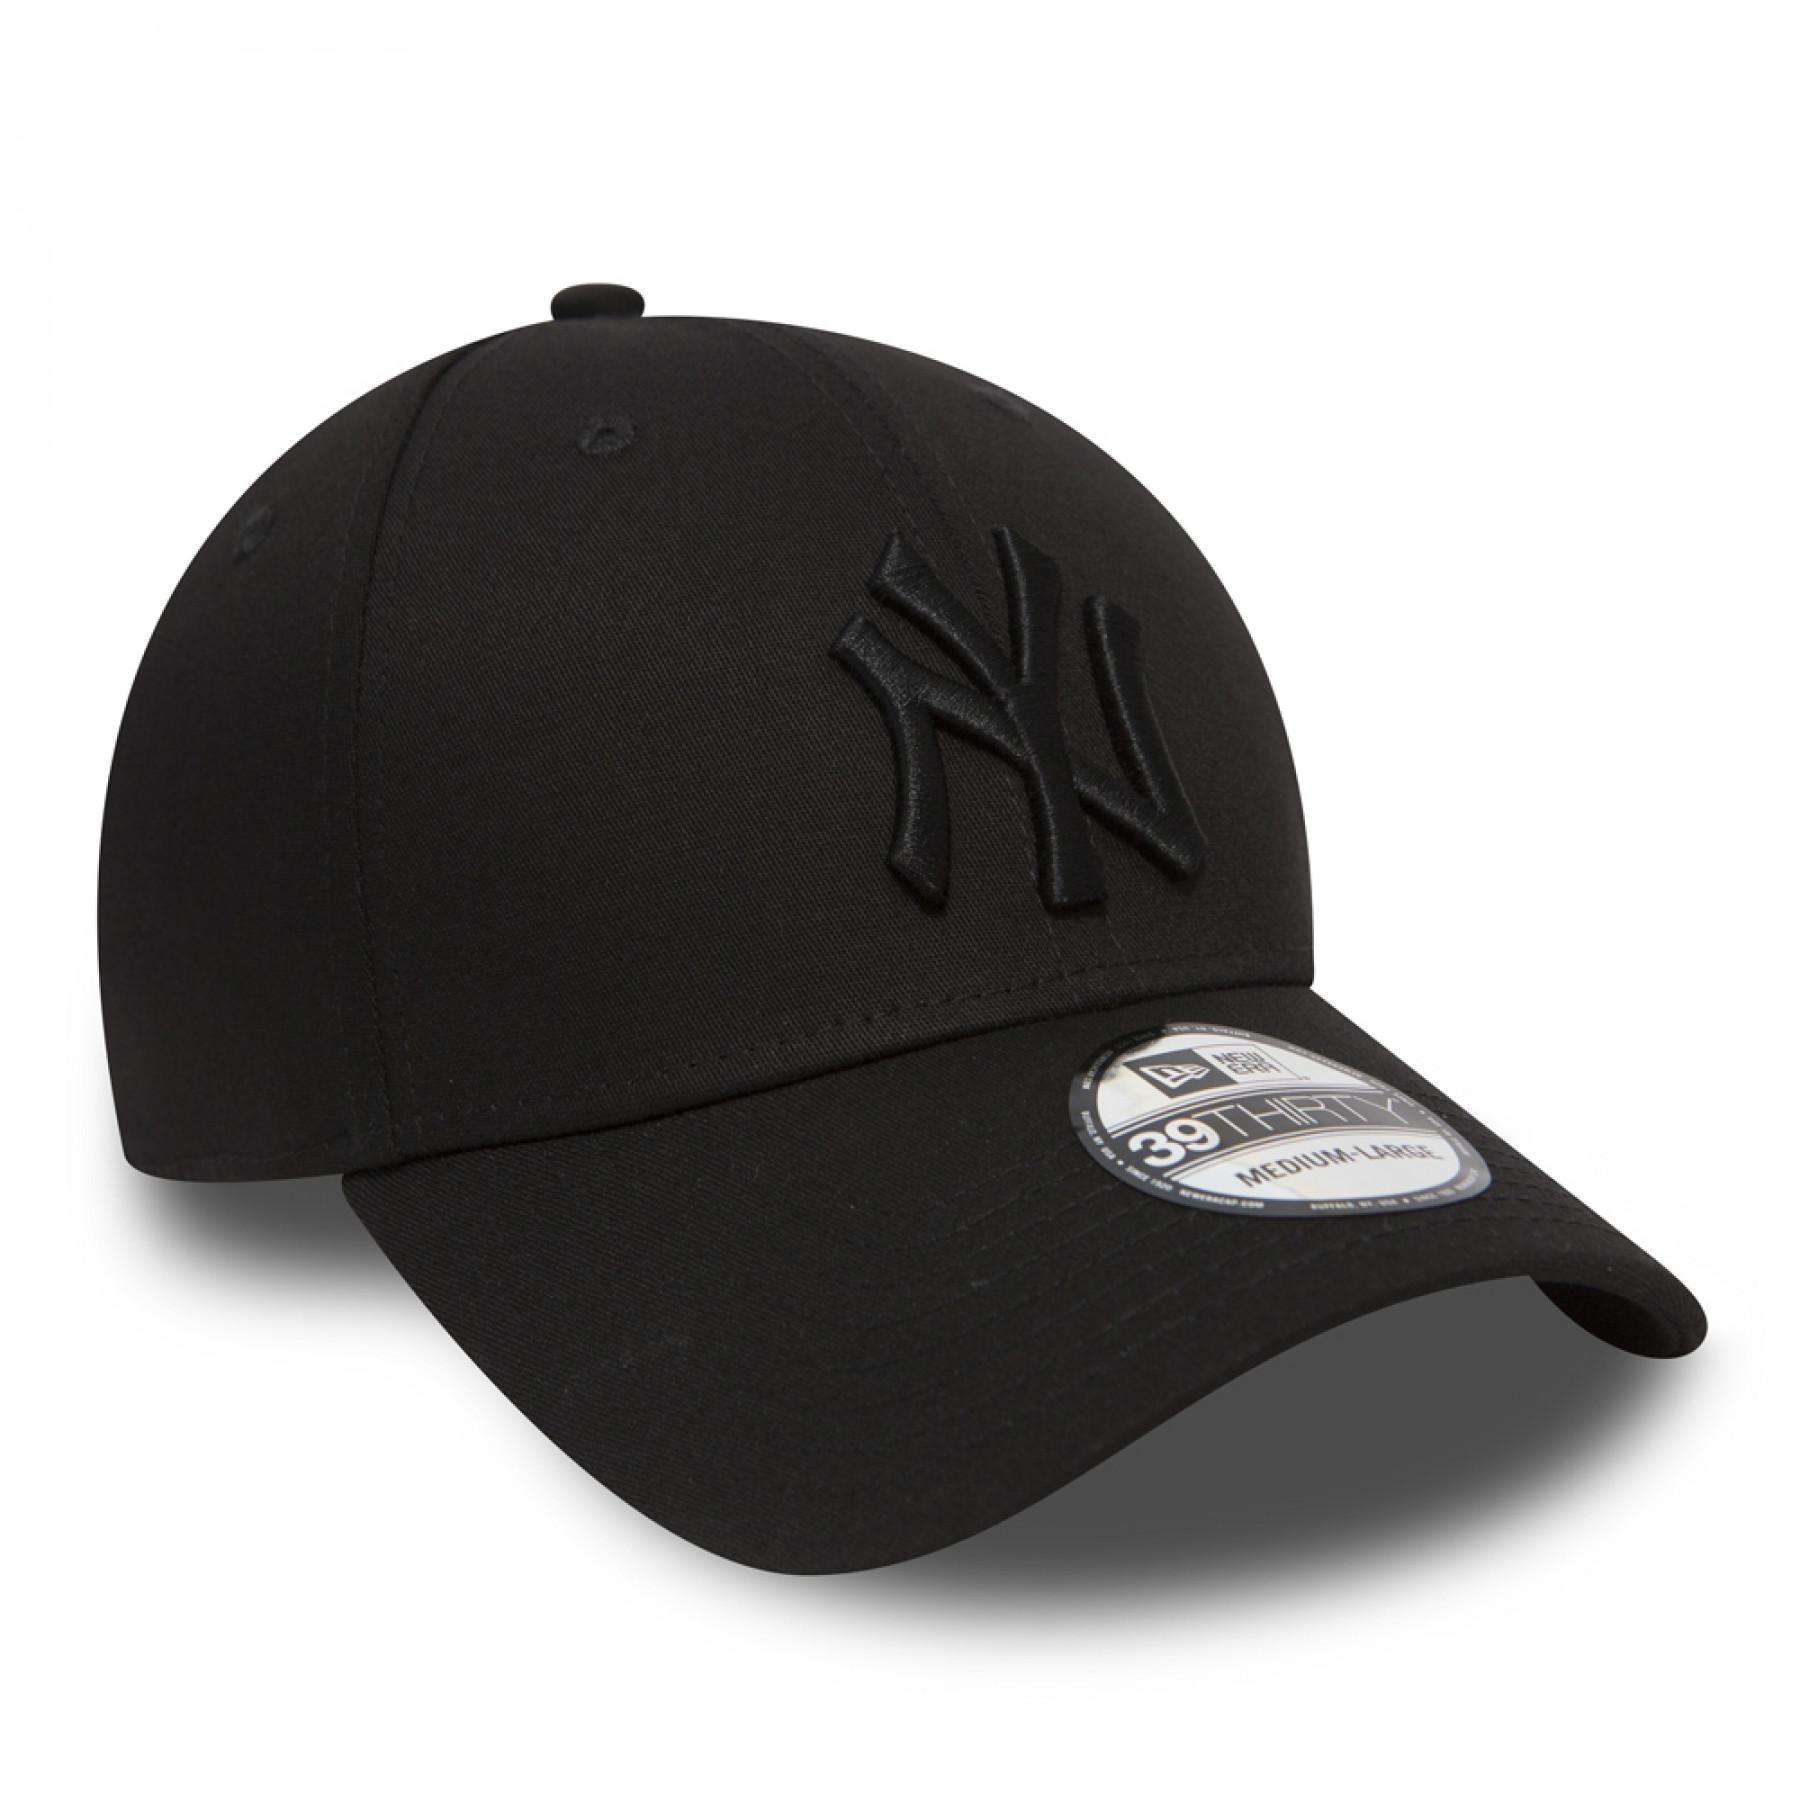 Cap New Era  Classic 39thirty New York Yankees